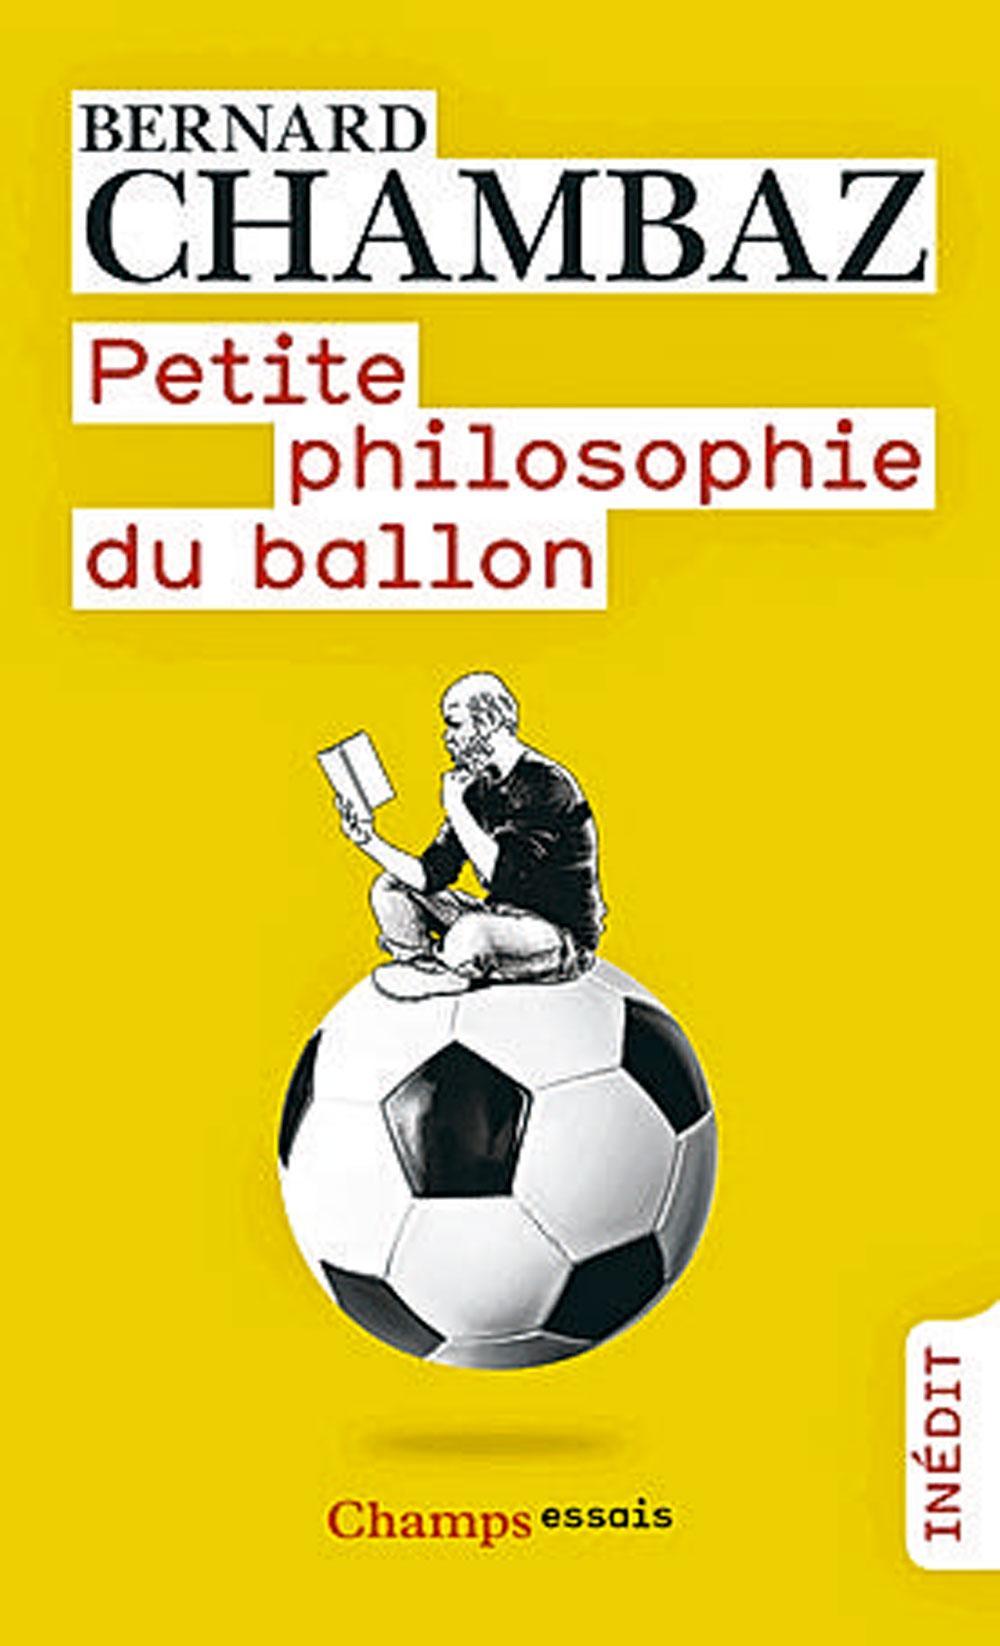 Petite philosophie du ballon, par Bernard Chambaz, Champs essais.